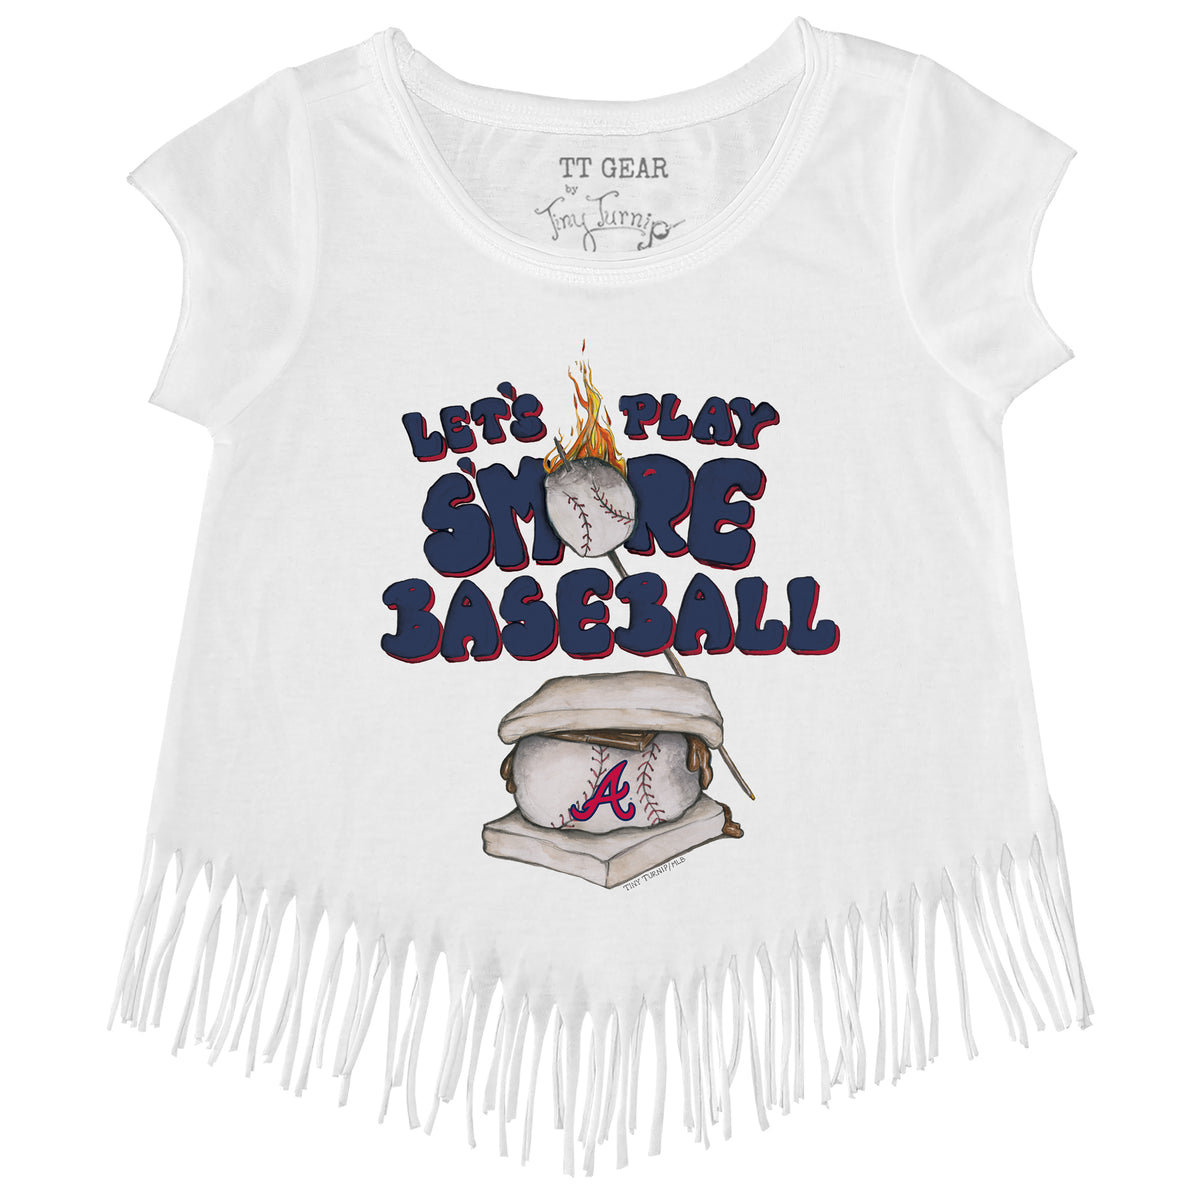 Girls Youth Tiny Turnip White Atlanta Braves Baseball Bow Fringe T-Shirt Size: Medium